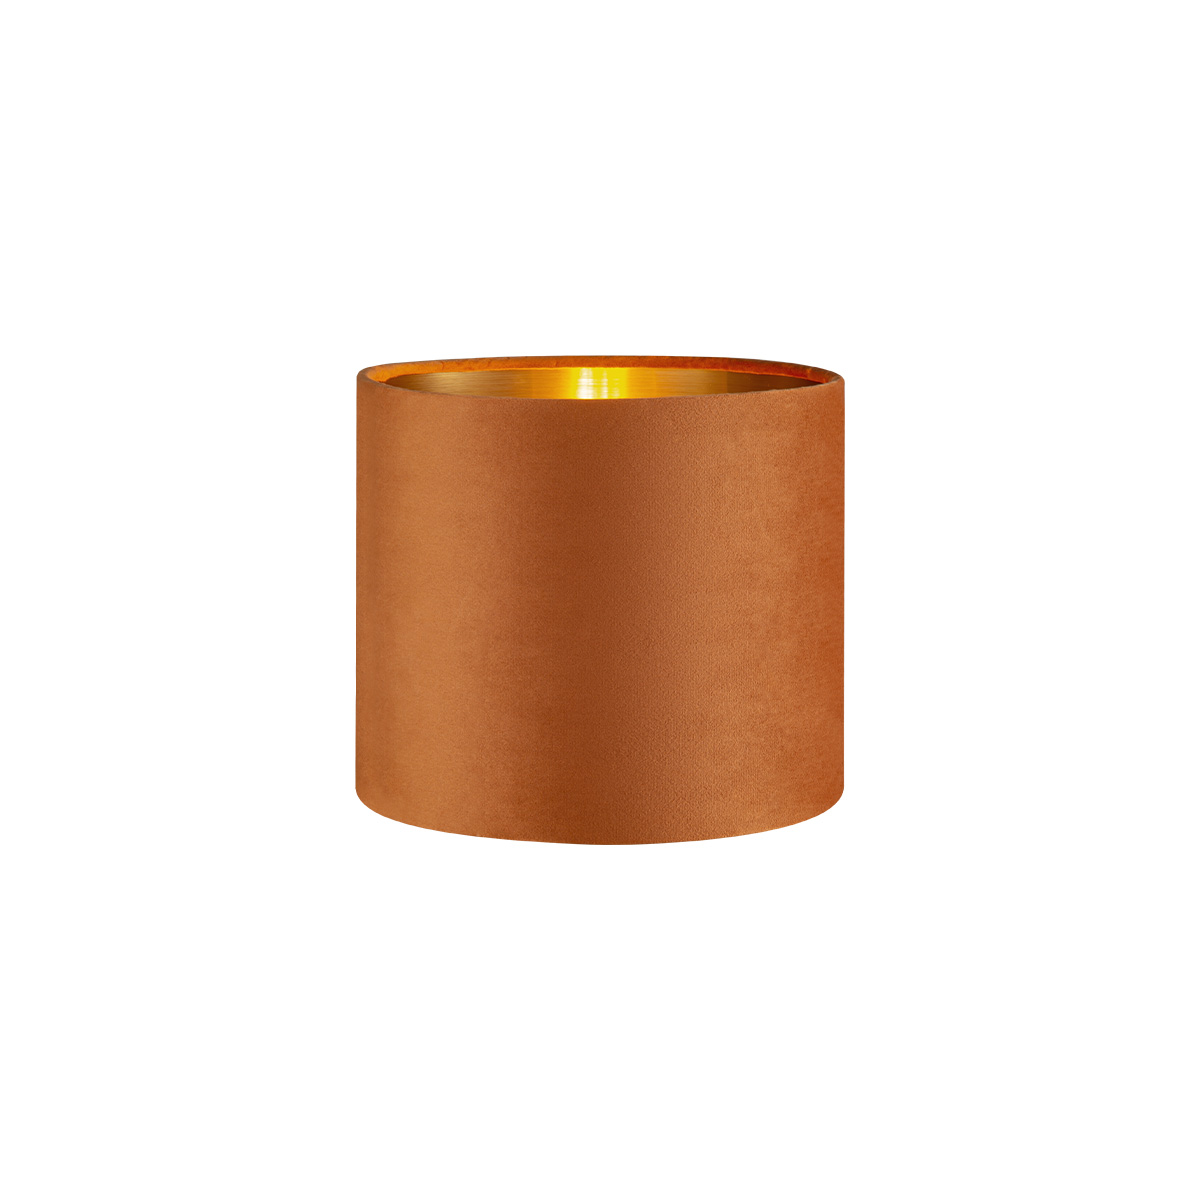 Tangla lighting - TLS7564-20OG - Lampshade - velvet - orange - diameter 20cm - E27